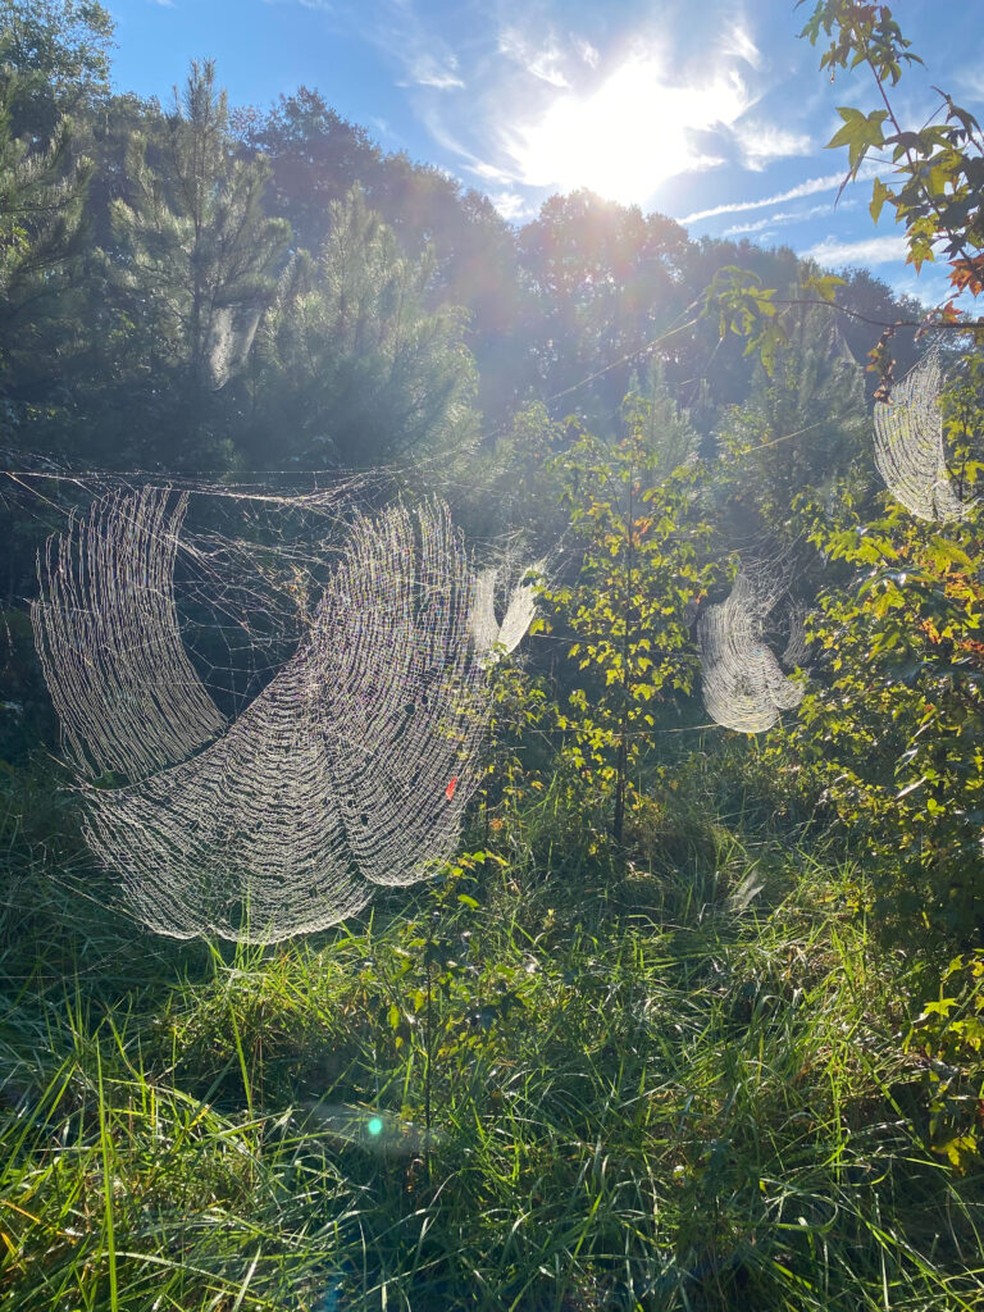 Teias da aranha Joro se espraiam no ambiente: difícil não se impressionar. — Foto: Divulgar